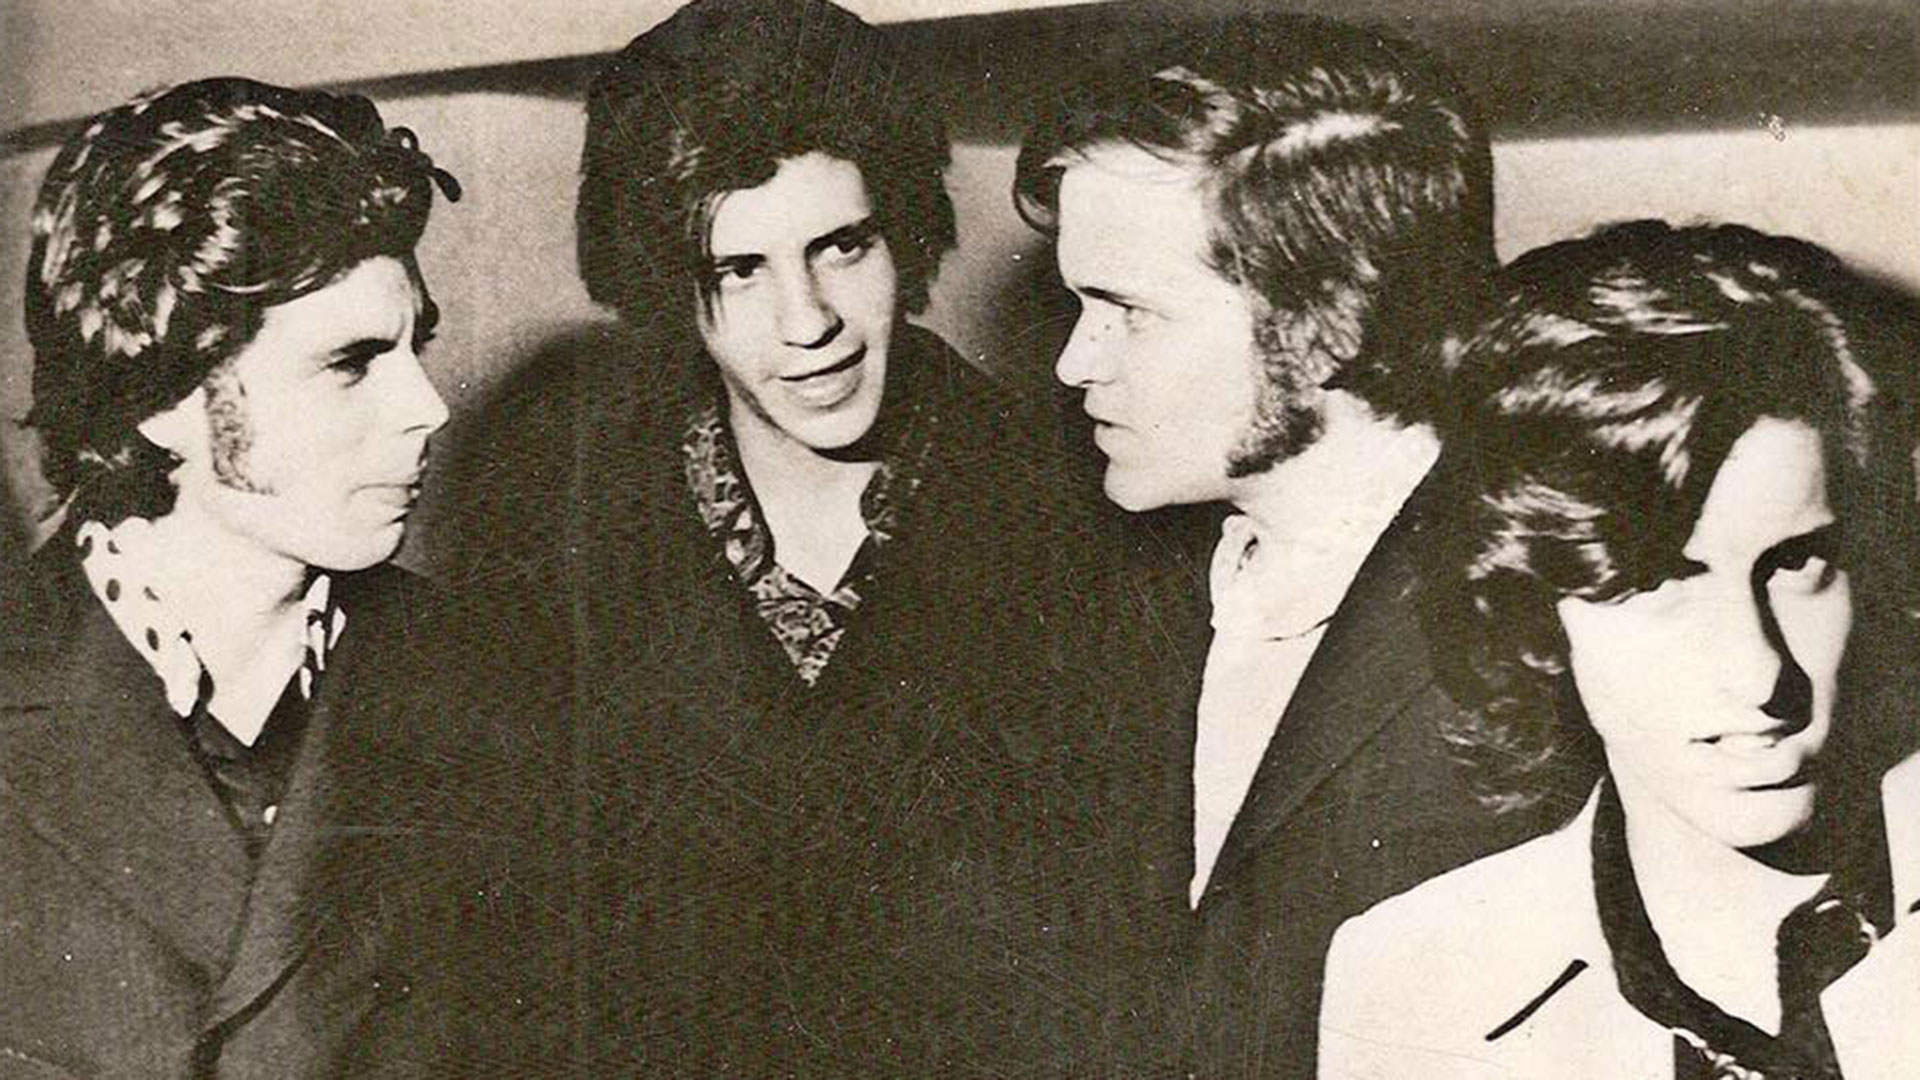 Lezica, Pando, Masllorens y Narvaja. La Joven Guardia dejó una marca en la música de los '70